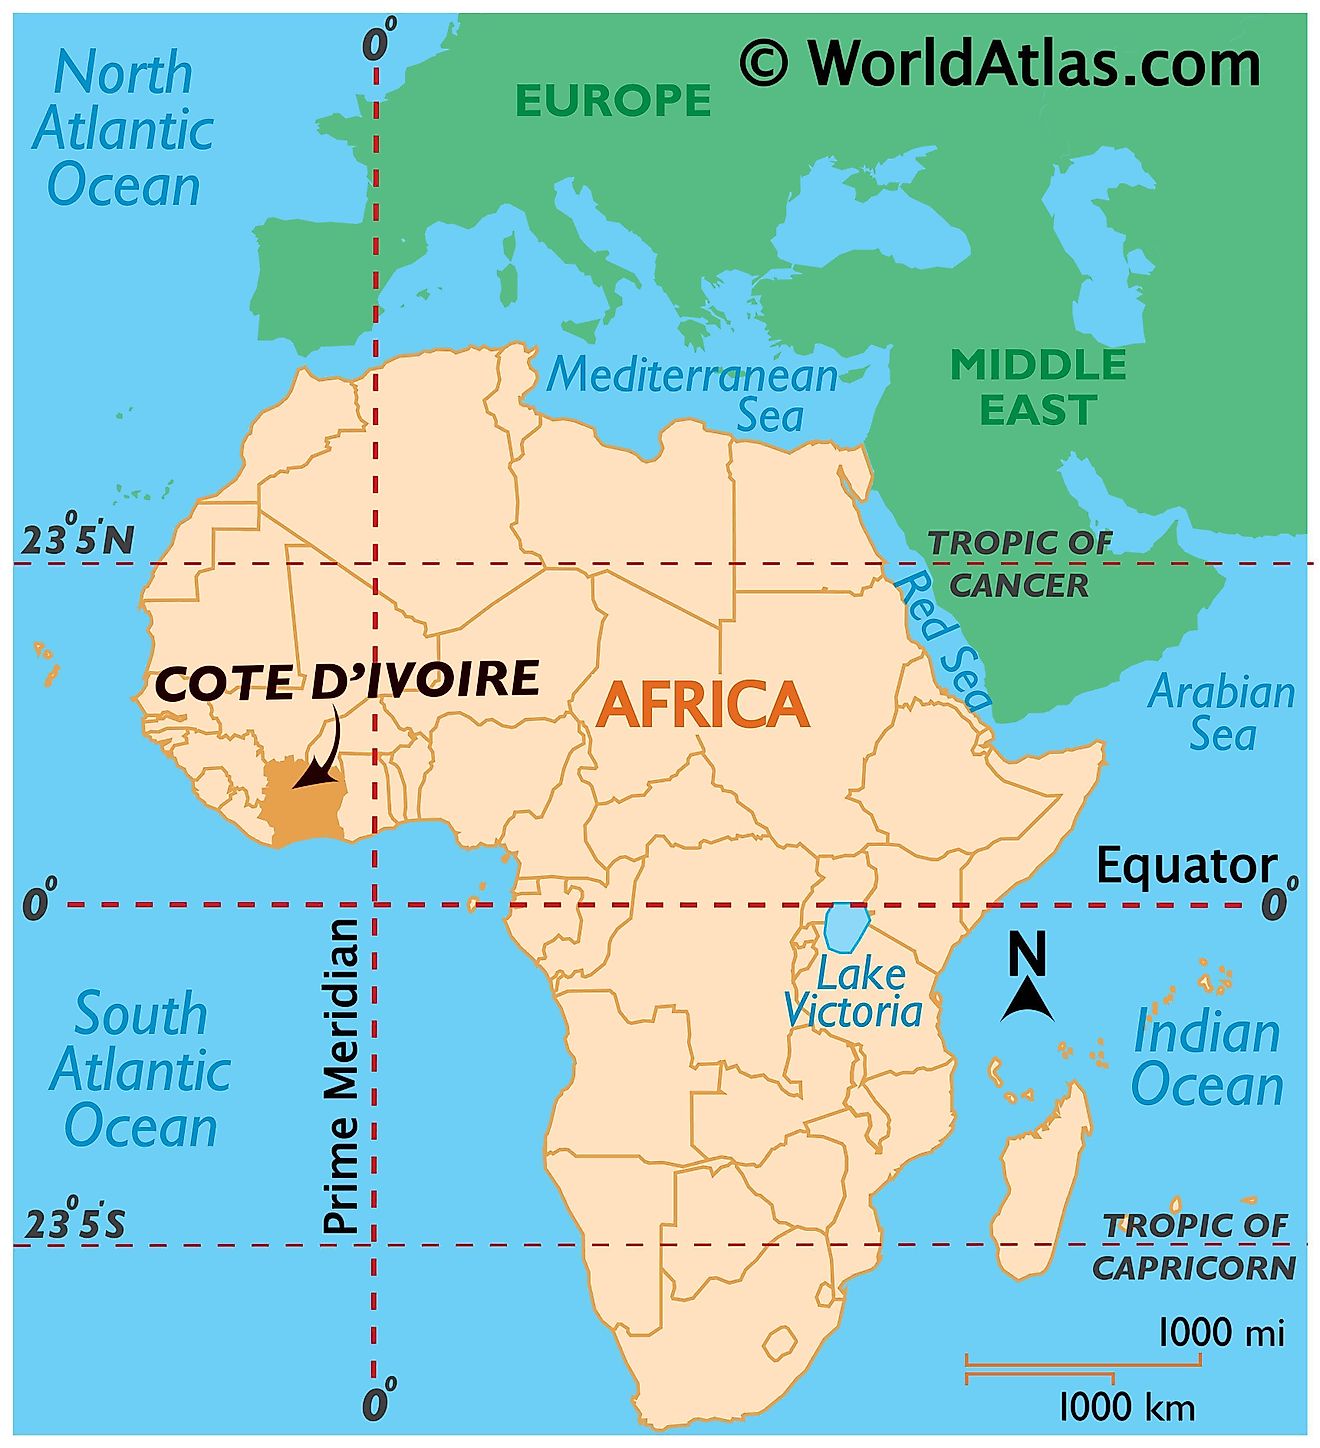 Cote d'Ivoire Maps & Facts - World Atlas